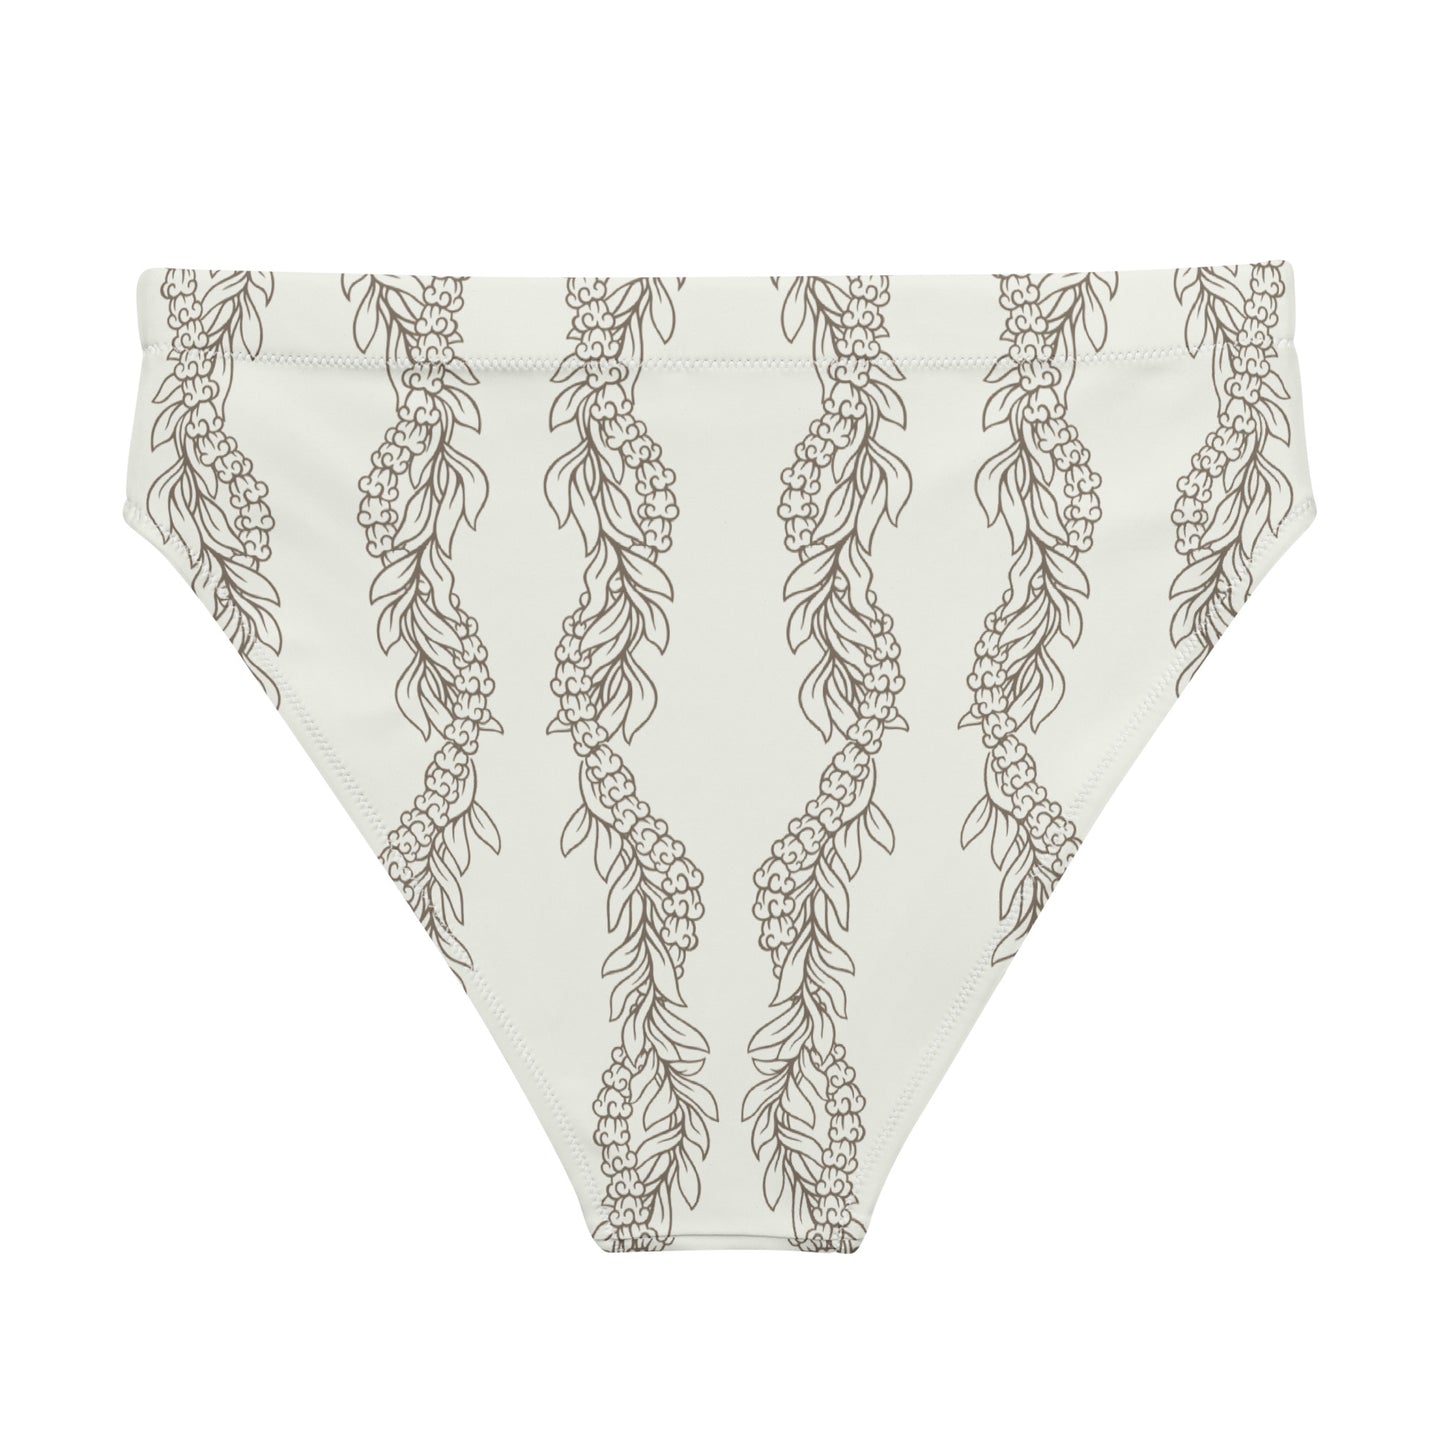 Cream Maile & Crownflower high-waisted bikini bottom